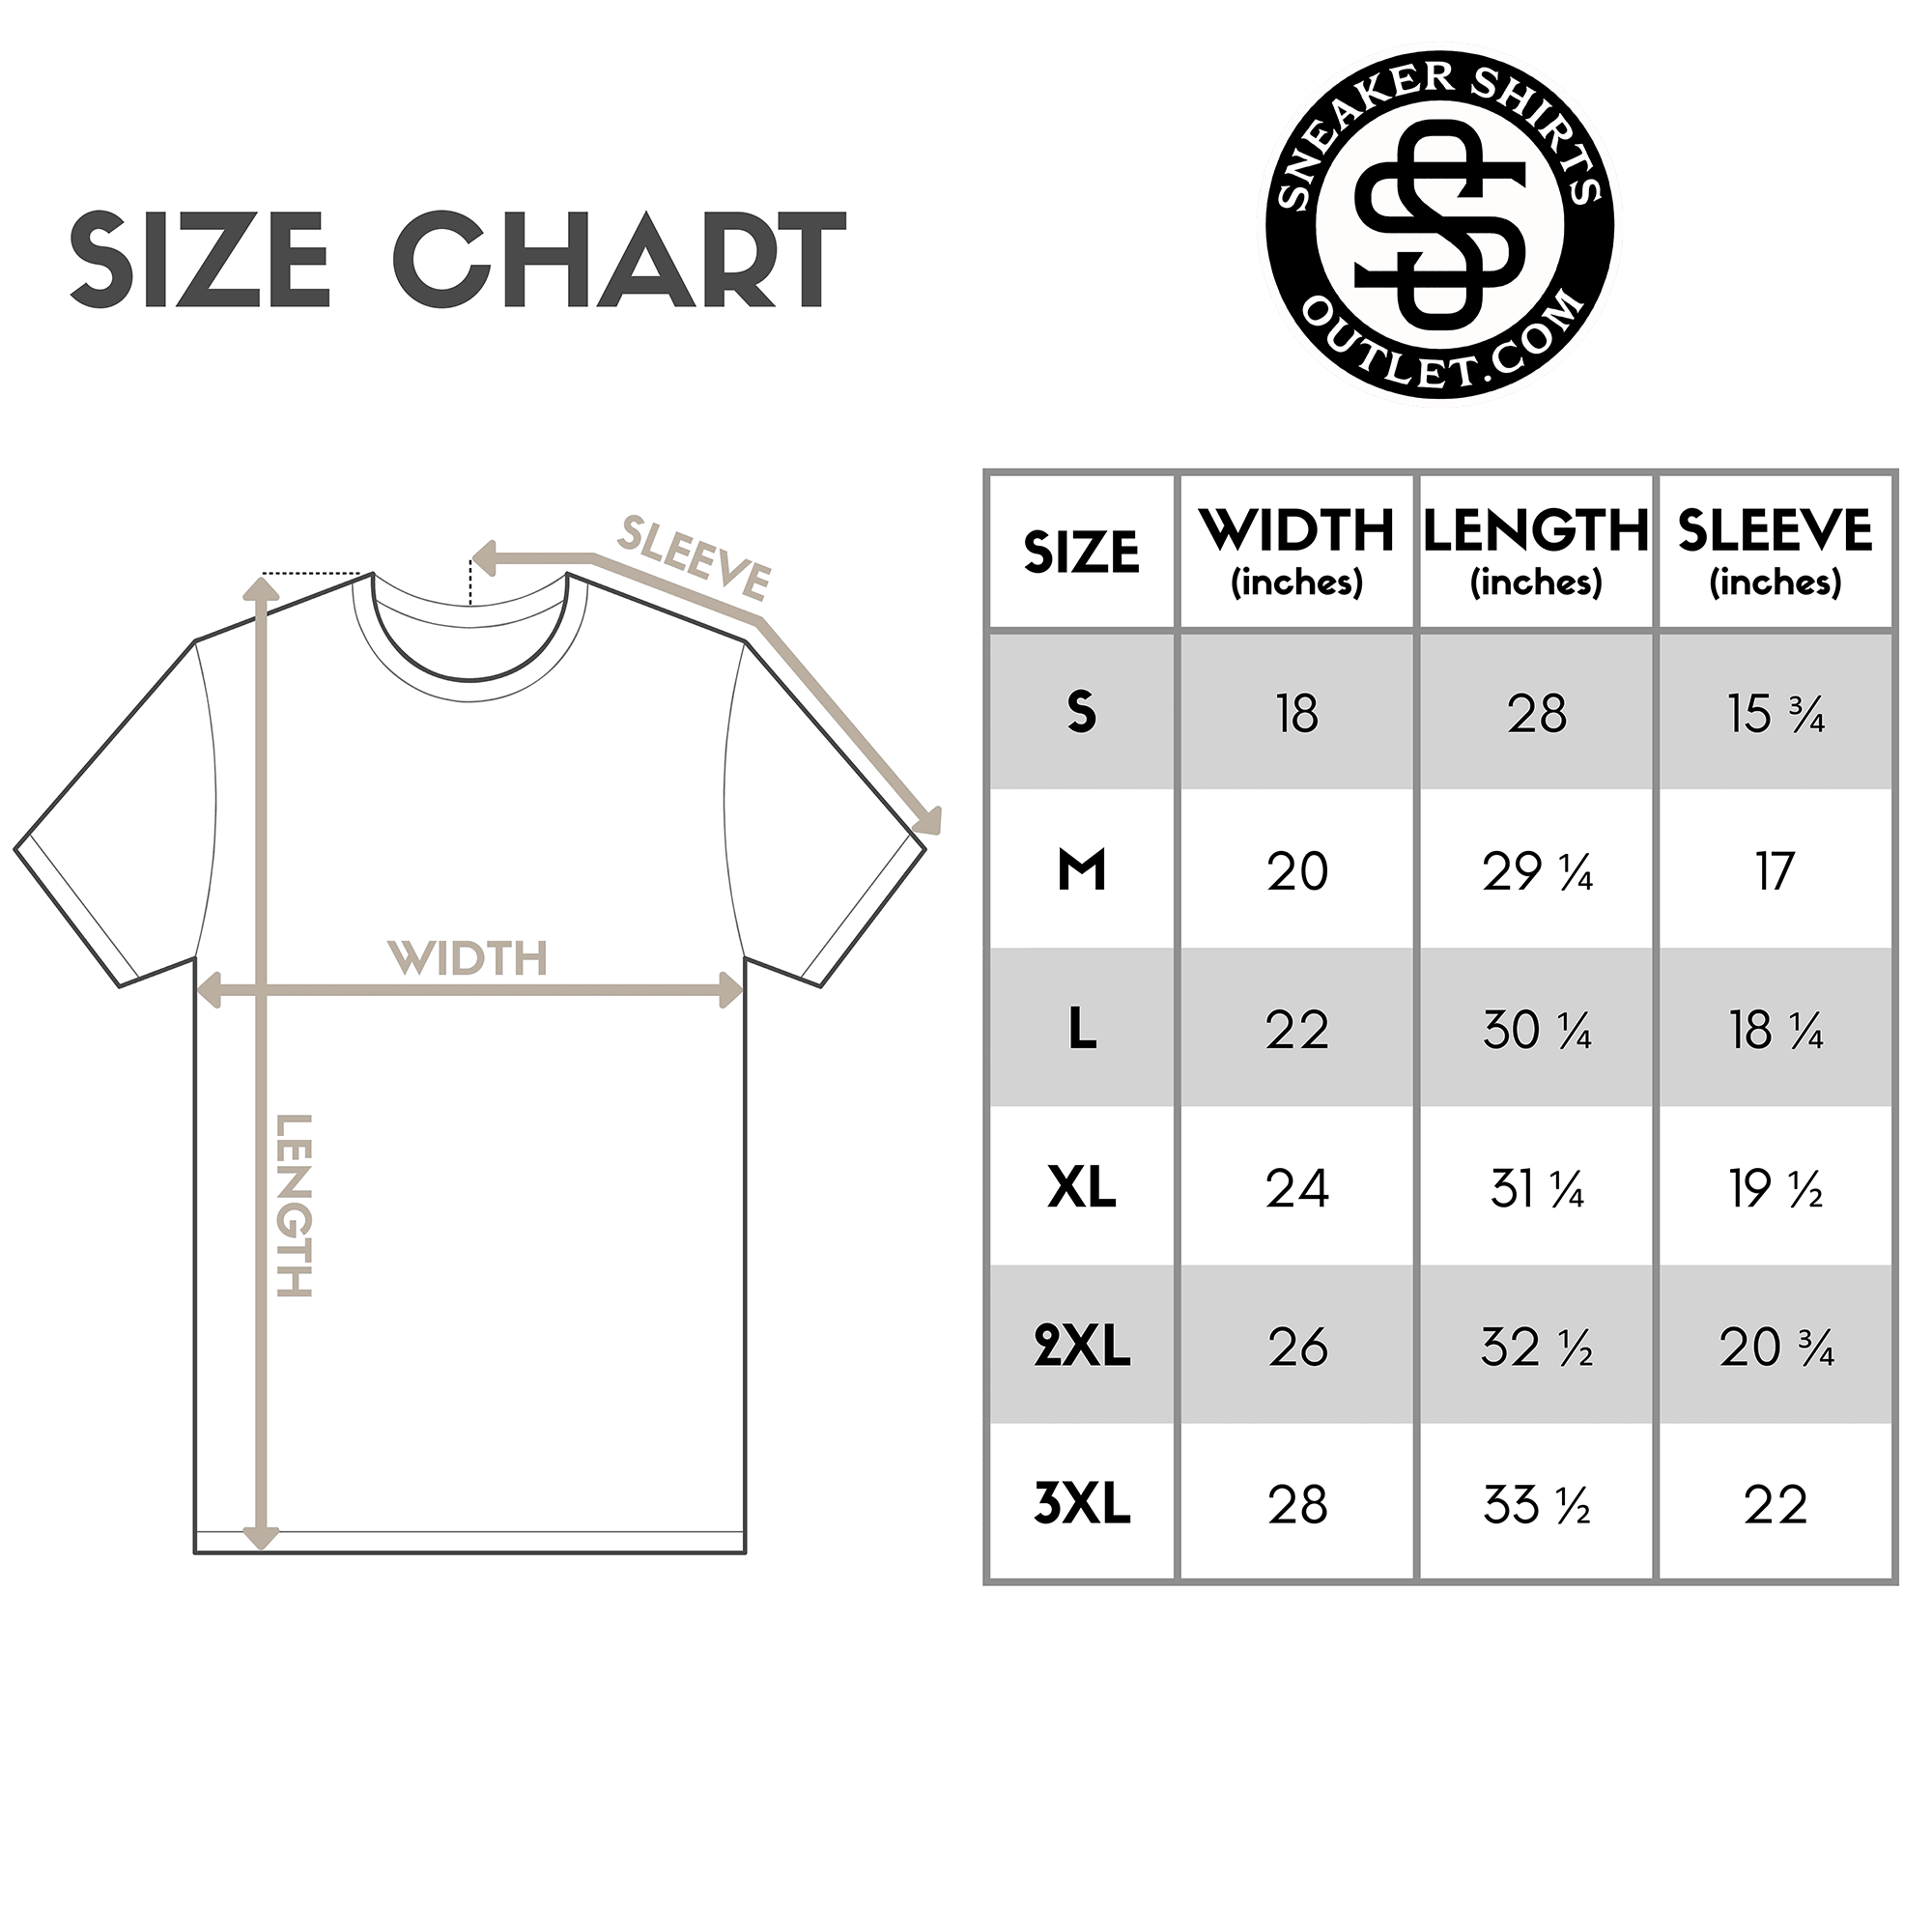 size chart 23 Melting Shirt Jordan 1s High OG Rebellionaire photo